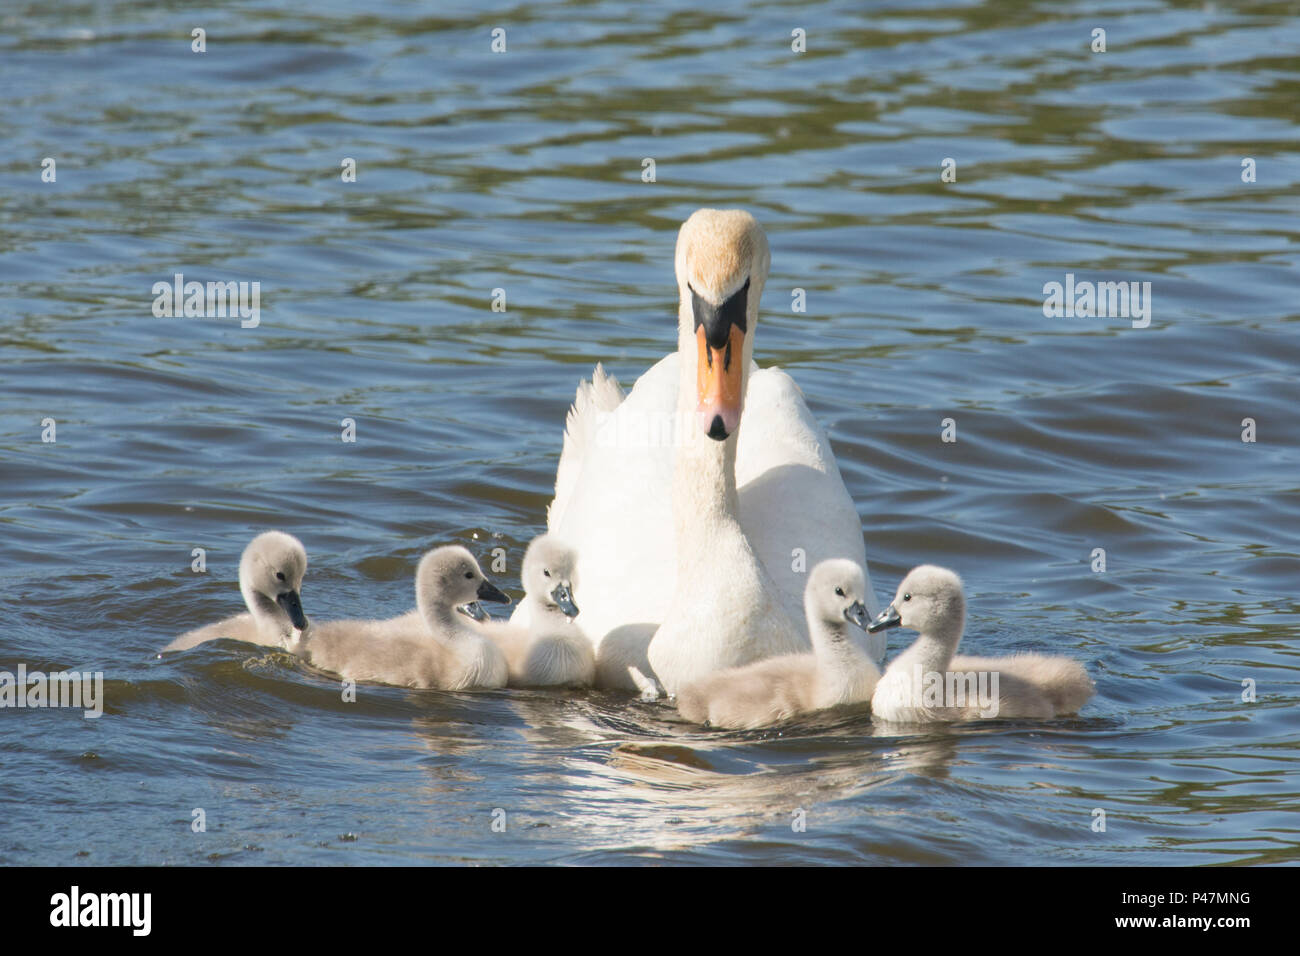 Cygne muet, mère avec de jeunes bébés, cygnets, nageant ensemble, Cygnus olor, Norfolk Broads, le fleuve de l'Ant, UK. Peut Banque D'Images